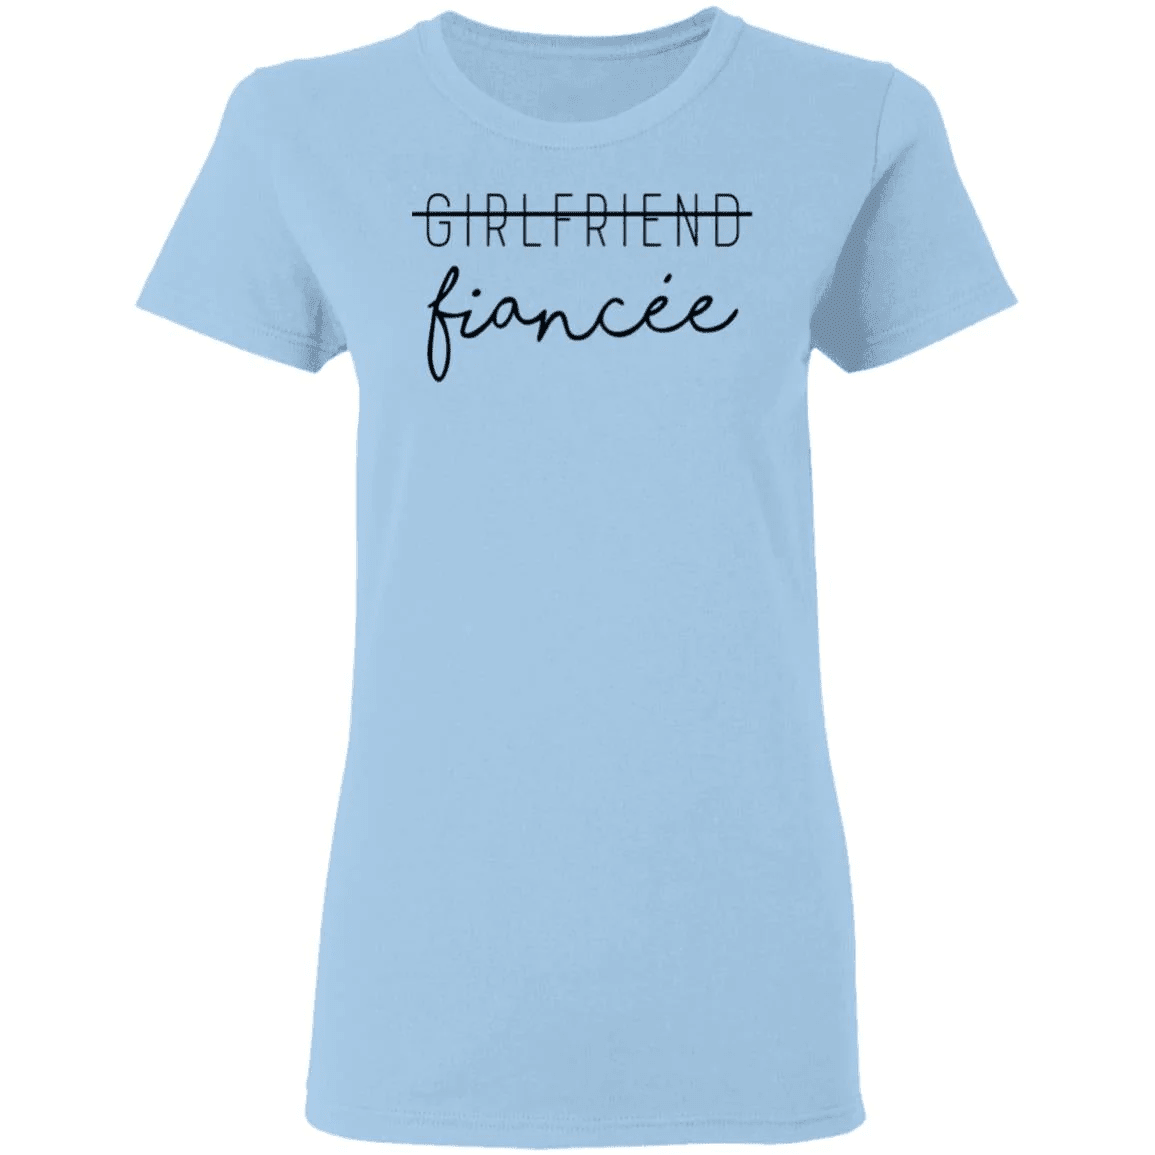 Girlfriend to fiancee - women shirt